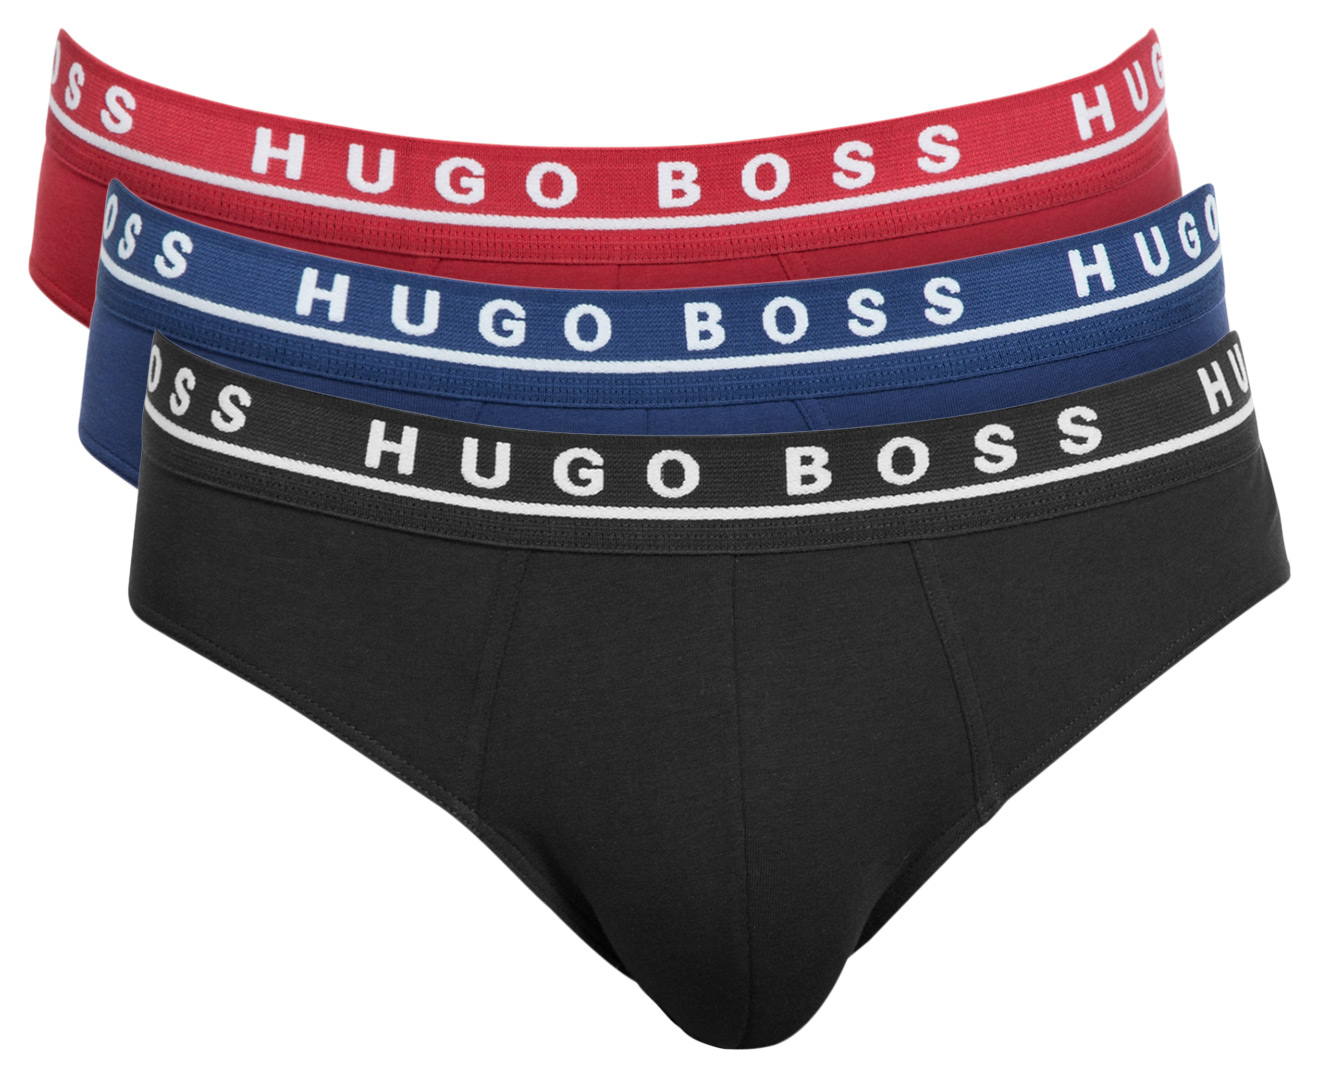 Hugo Boss Men's Mini Briefs 3-Pack - Red/Blue/Black | Scoopon Shopping